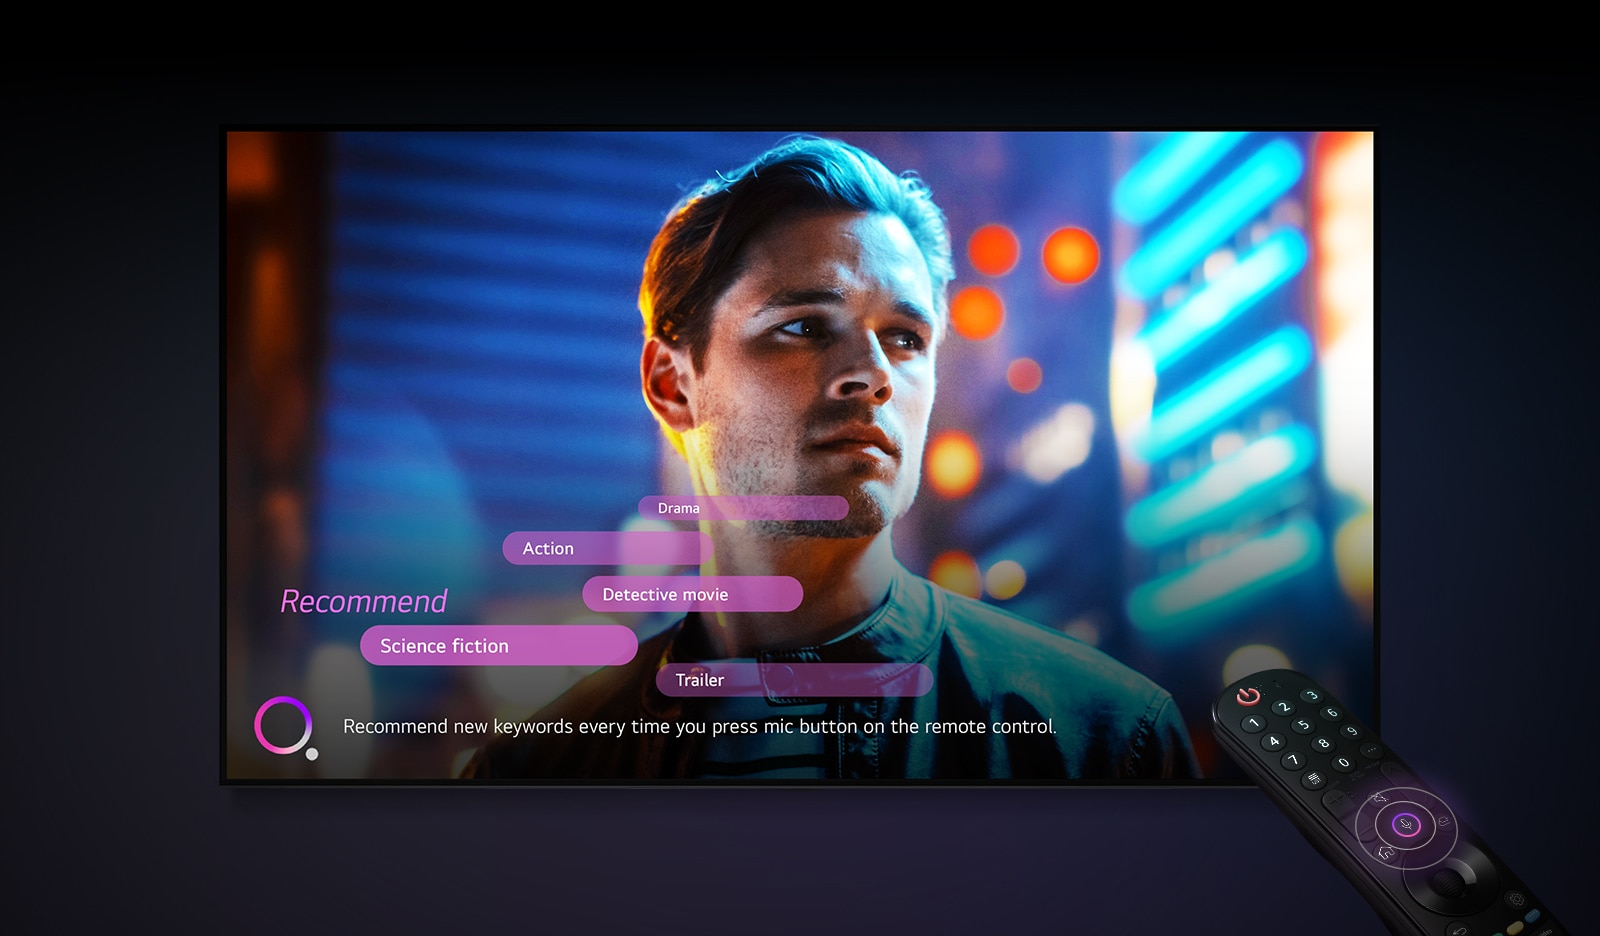 La cara de un hombre se muestra en la pantalla del televisor y las palabras clave recomendadas se muestran cerca.